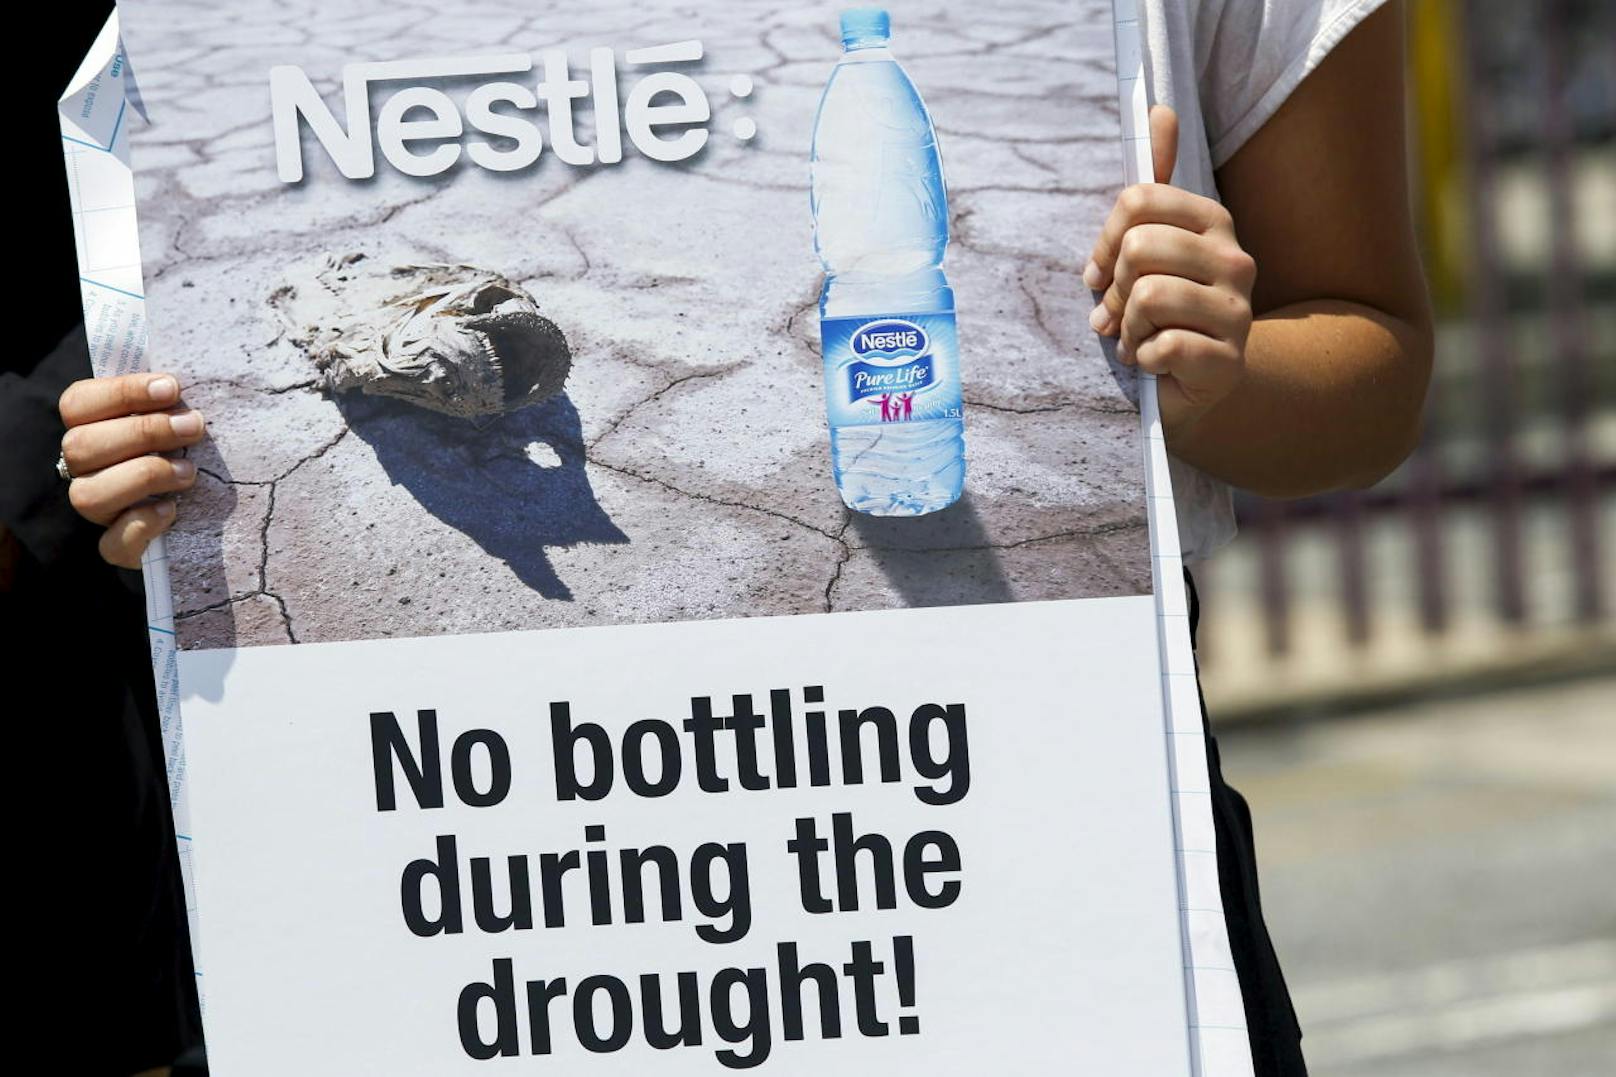 Proteste gegen Nestlé und sein Wassergeschäft gibt es immer wieder.